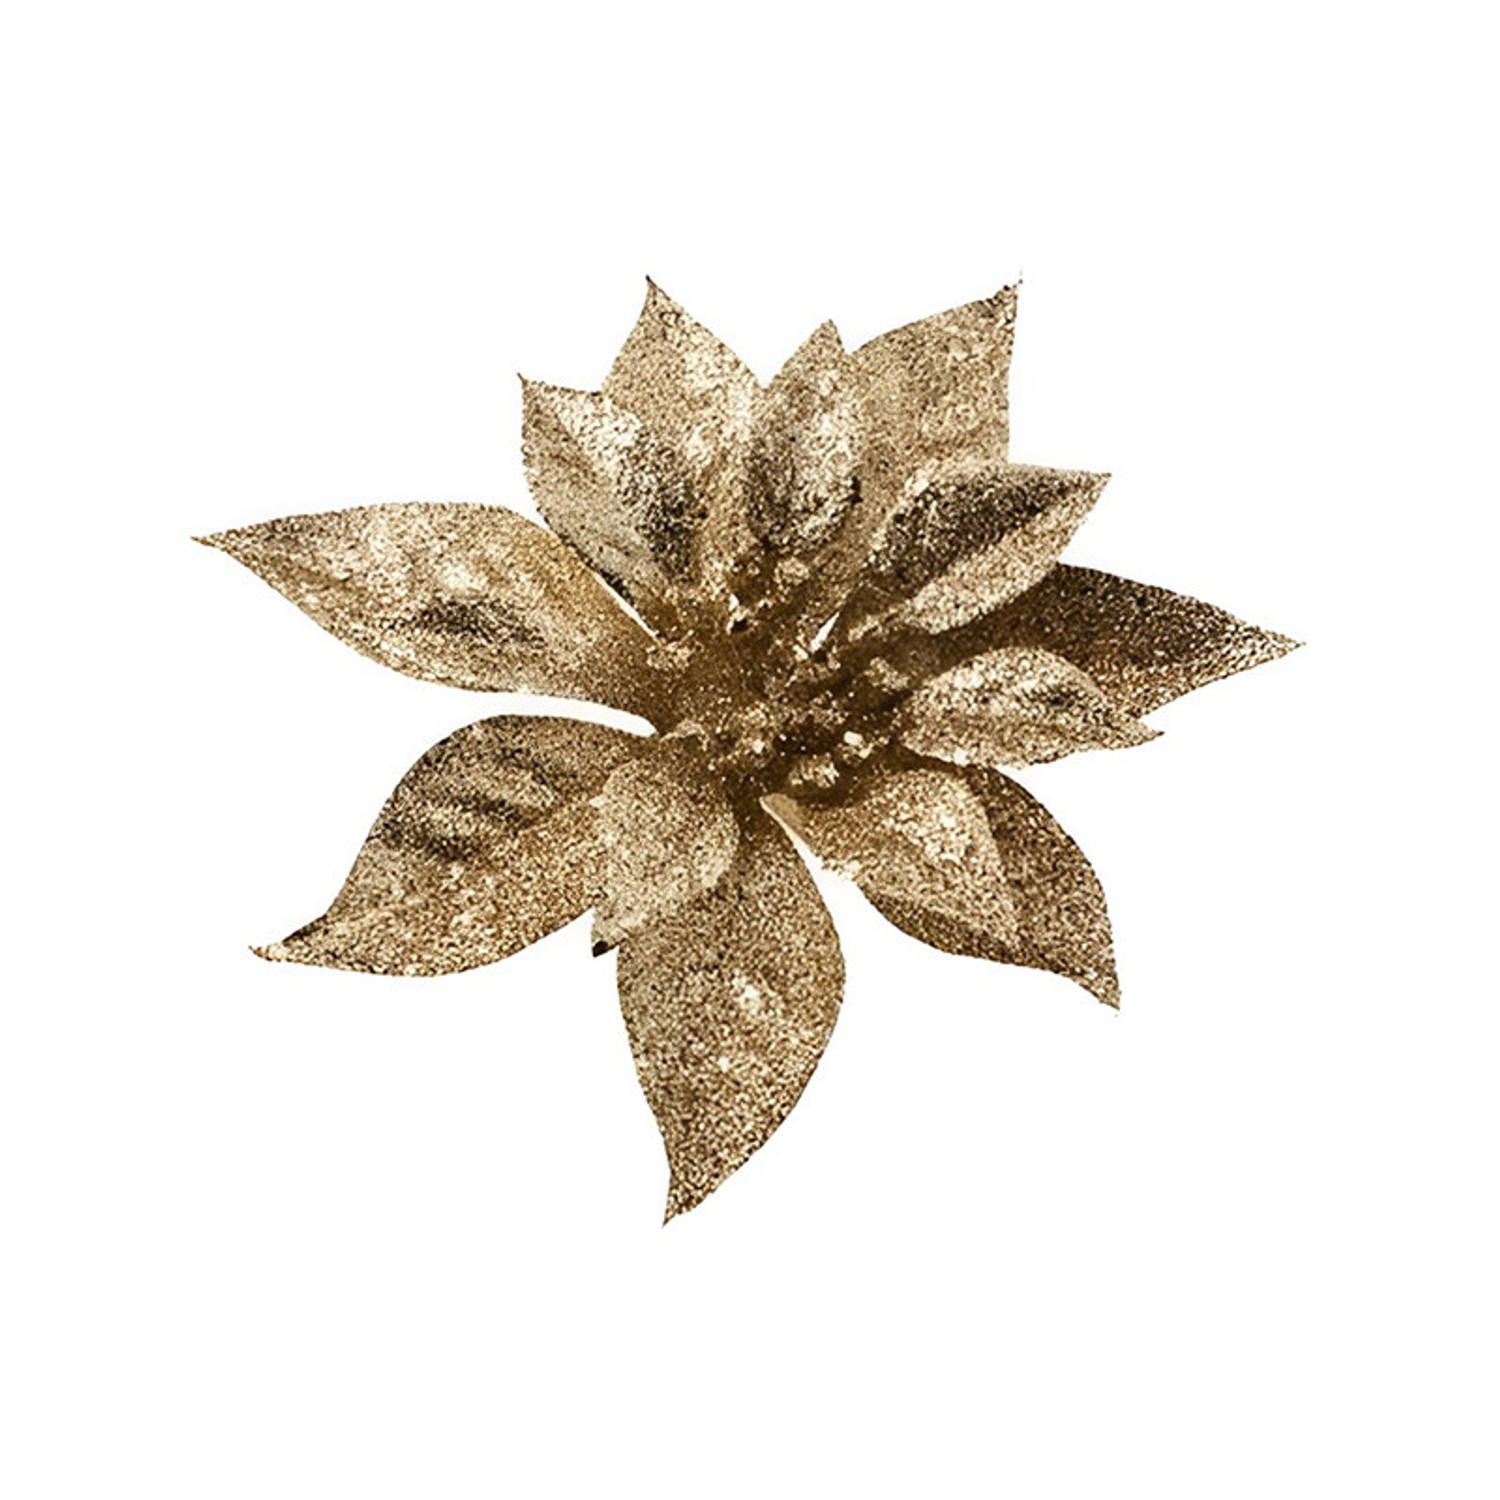 Kerstboom decoratie bloem goud 18 cm